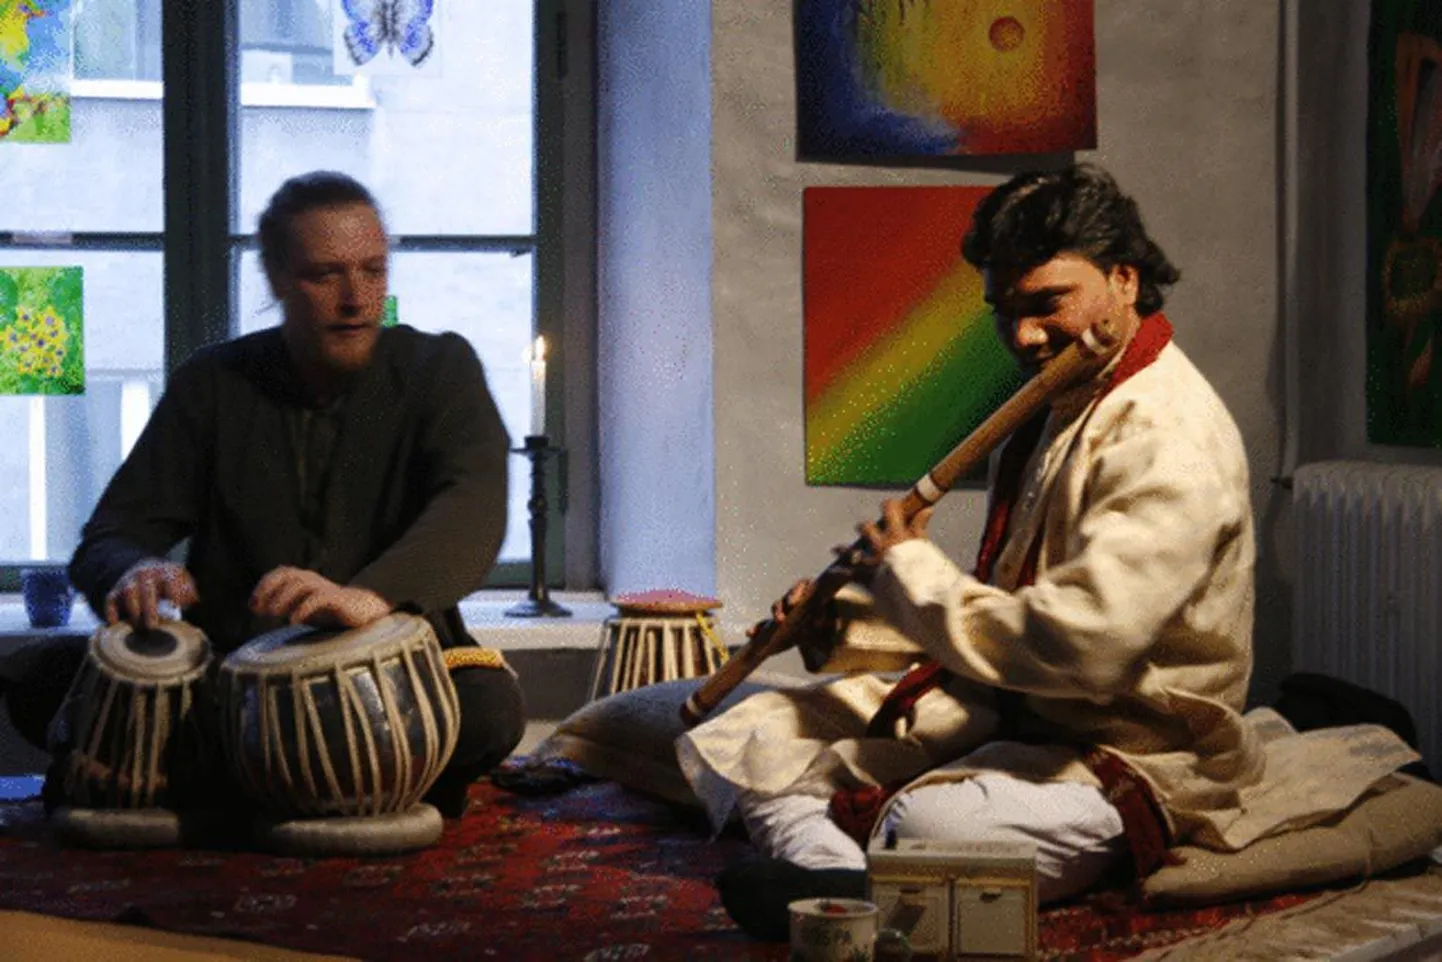 Ashok Kumar Mehta - iidsest Varanasi linnast pärit muusikatraditsioonide jätkaja (bansuri-bambusflööt). Arno Kalbus - aastaid Nepaalis ja Indias tablamängu täpset kunsti õppinud eesti muusik (tabla - rütmiinstrument).